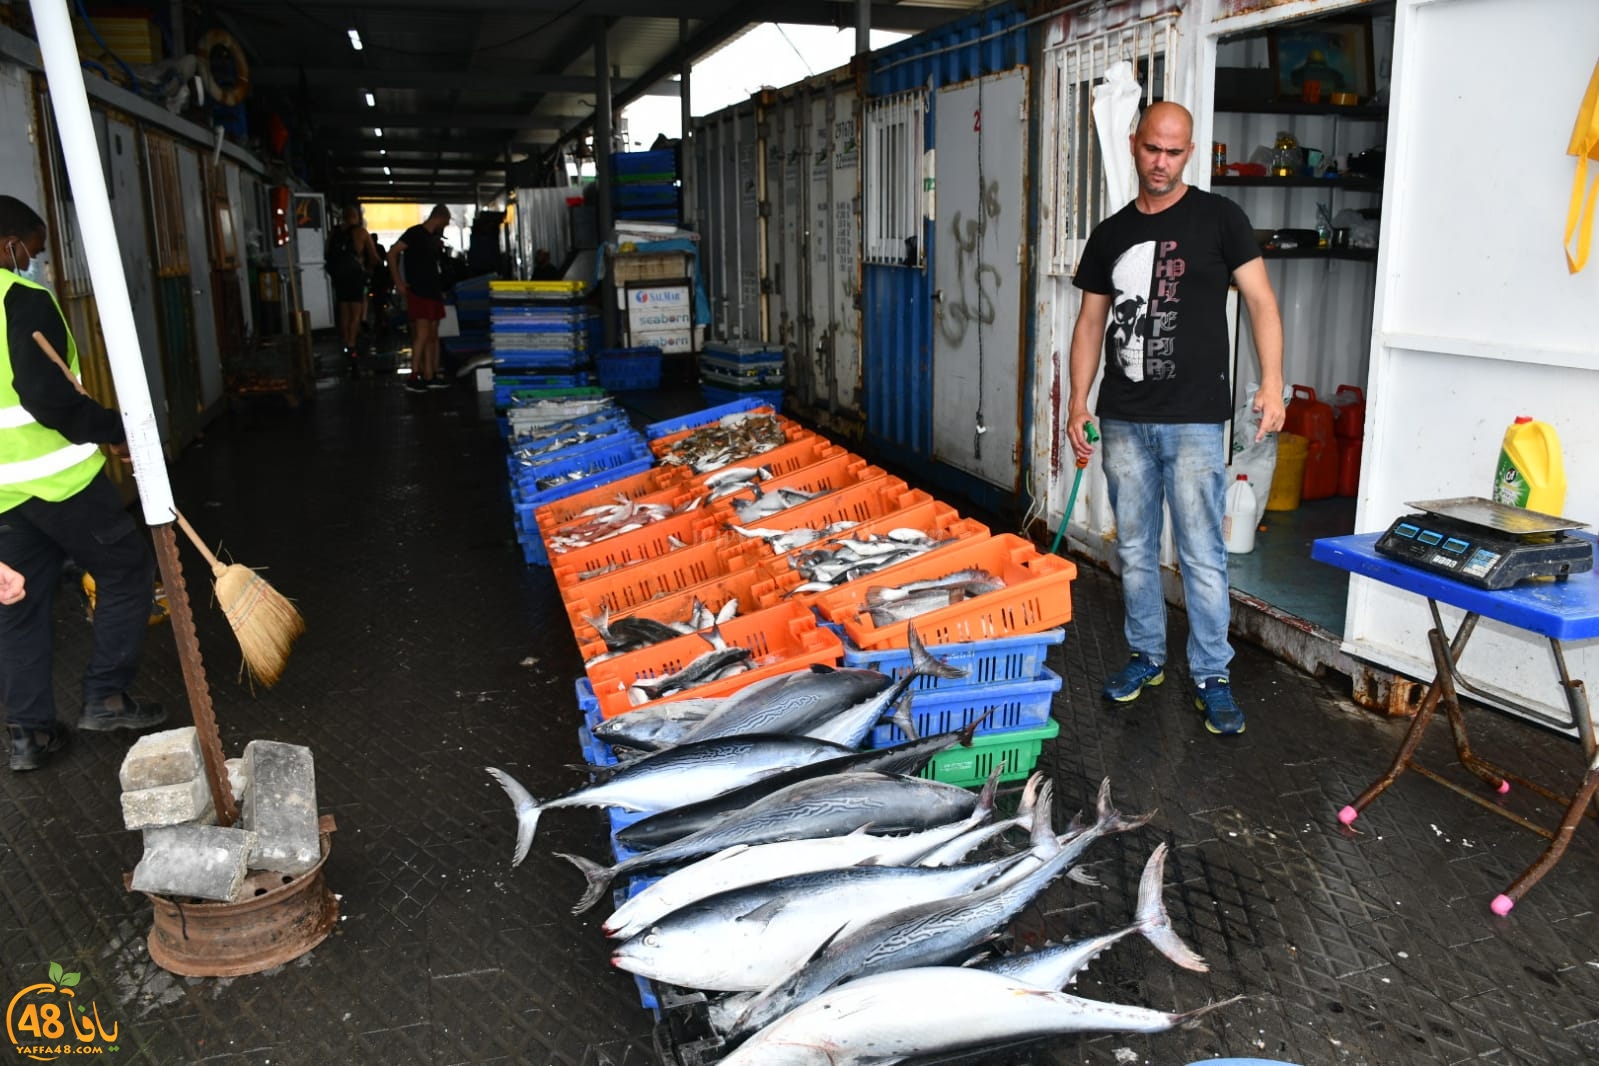  بمناسبة العيد - تخفيضات على الأسماك لدى الريس ابراهيم سوري في ميناء يافا 